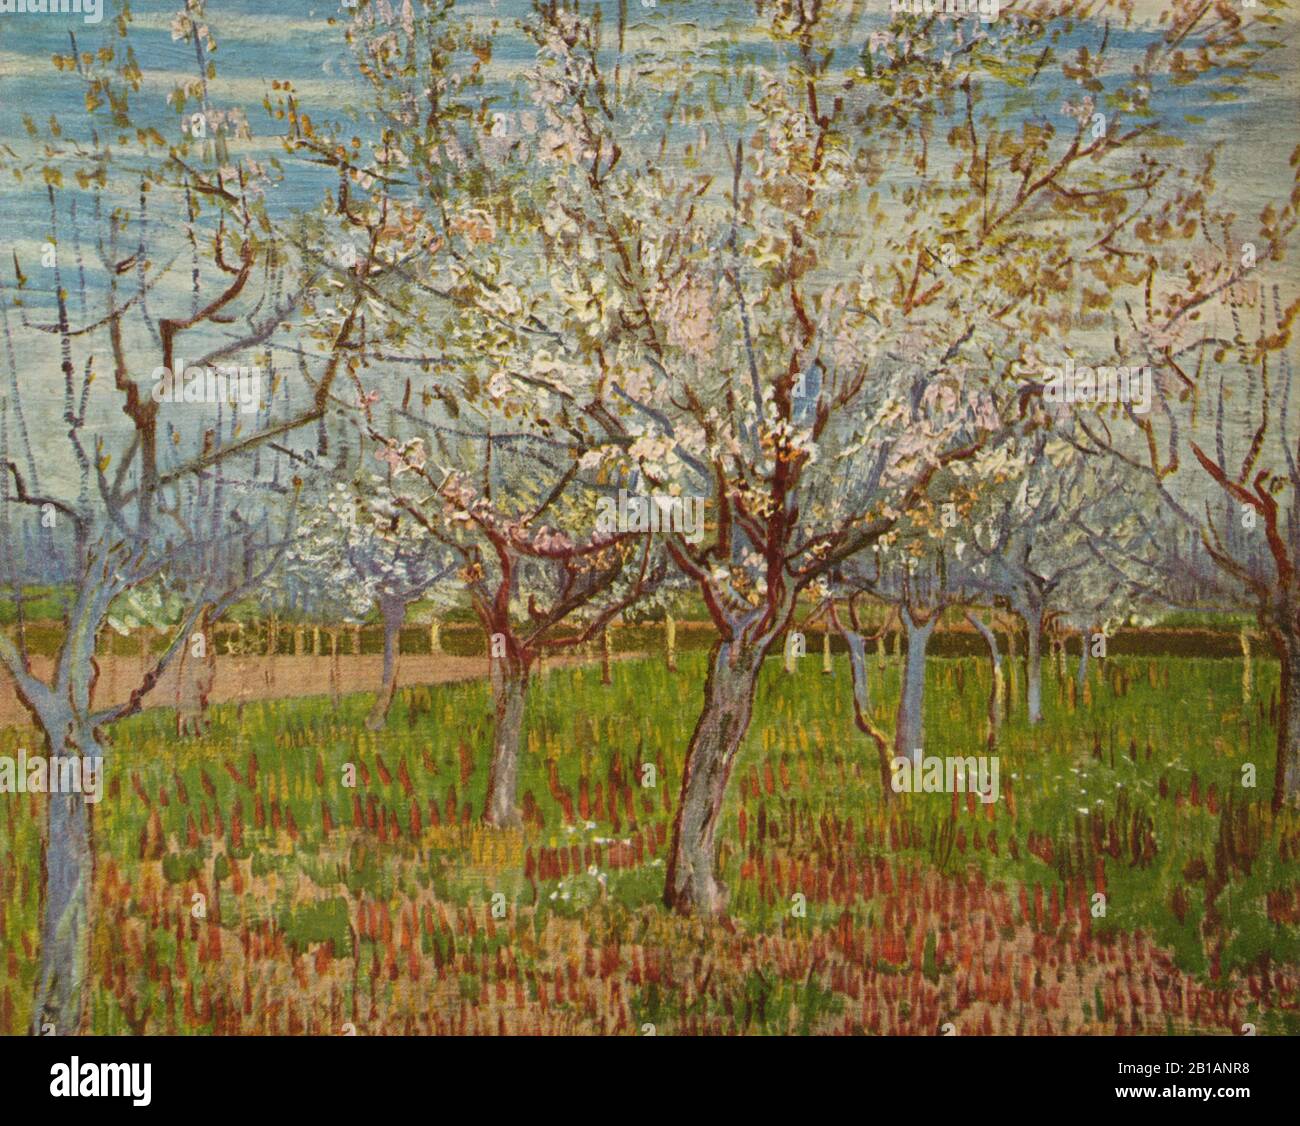 The Orchard, 1888 - dipinto di Vincent van Gogh - immagine Ad Altissima risoluzione e qualità Foto Stock